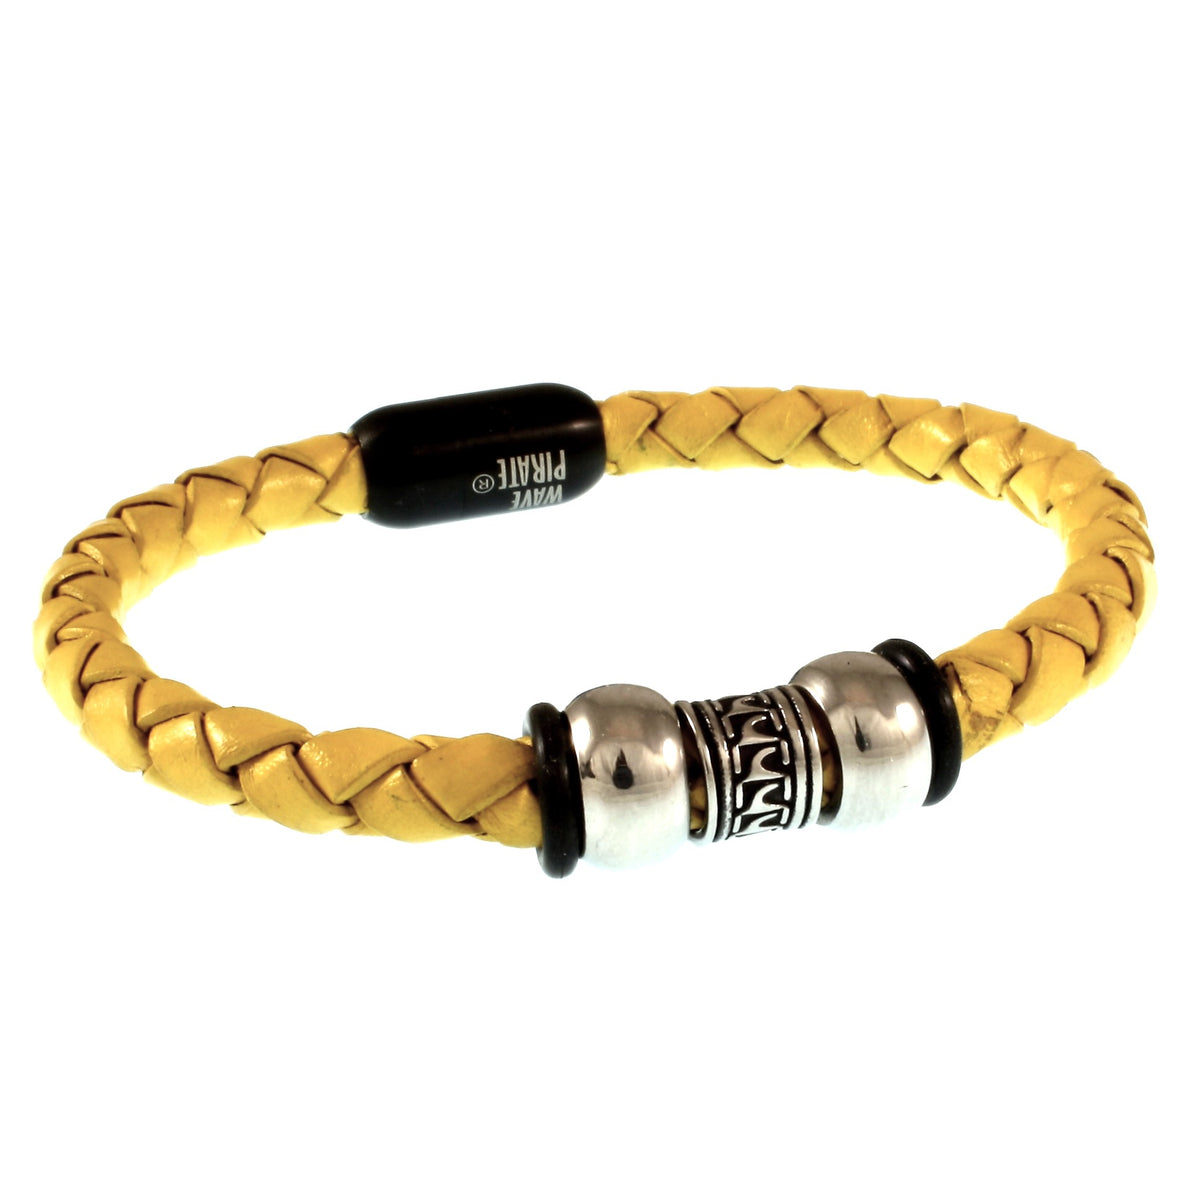 Herren-Leder-Armband-atoll-gelb-schwarz-geflochten-Edelstahlverschluss-vorn-wavepirate-shop-f